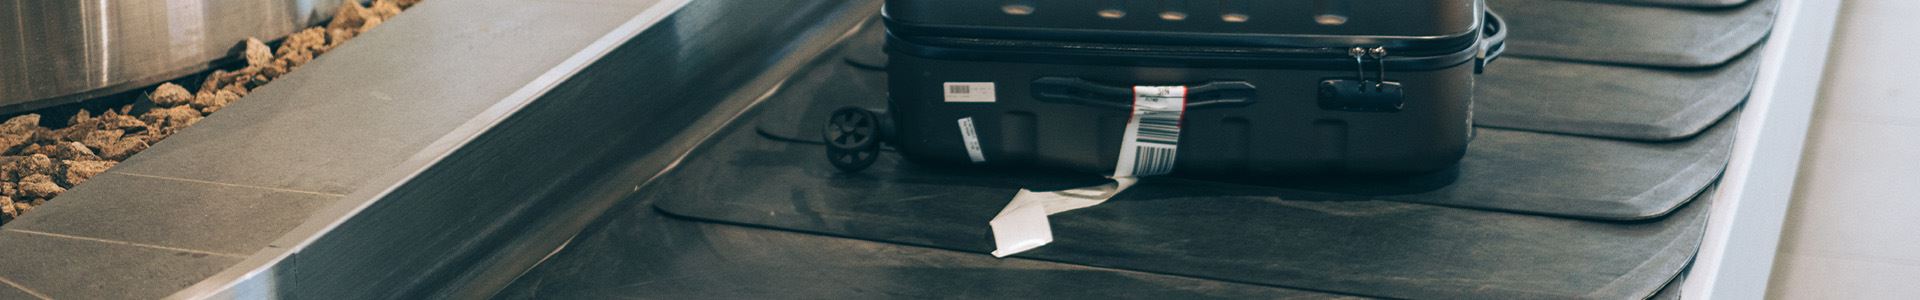 Imagem de uma mala de mão preta, rígida, com alças superiores e laterais, e com uma etiqueta de bagagem branca na alça lateral, deitada em uma esteira de bagagem.